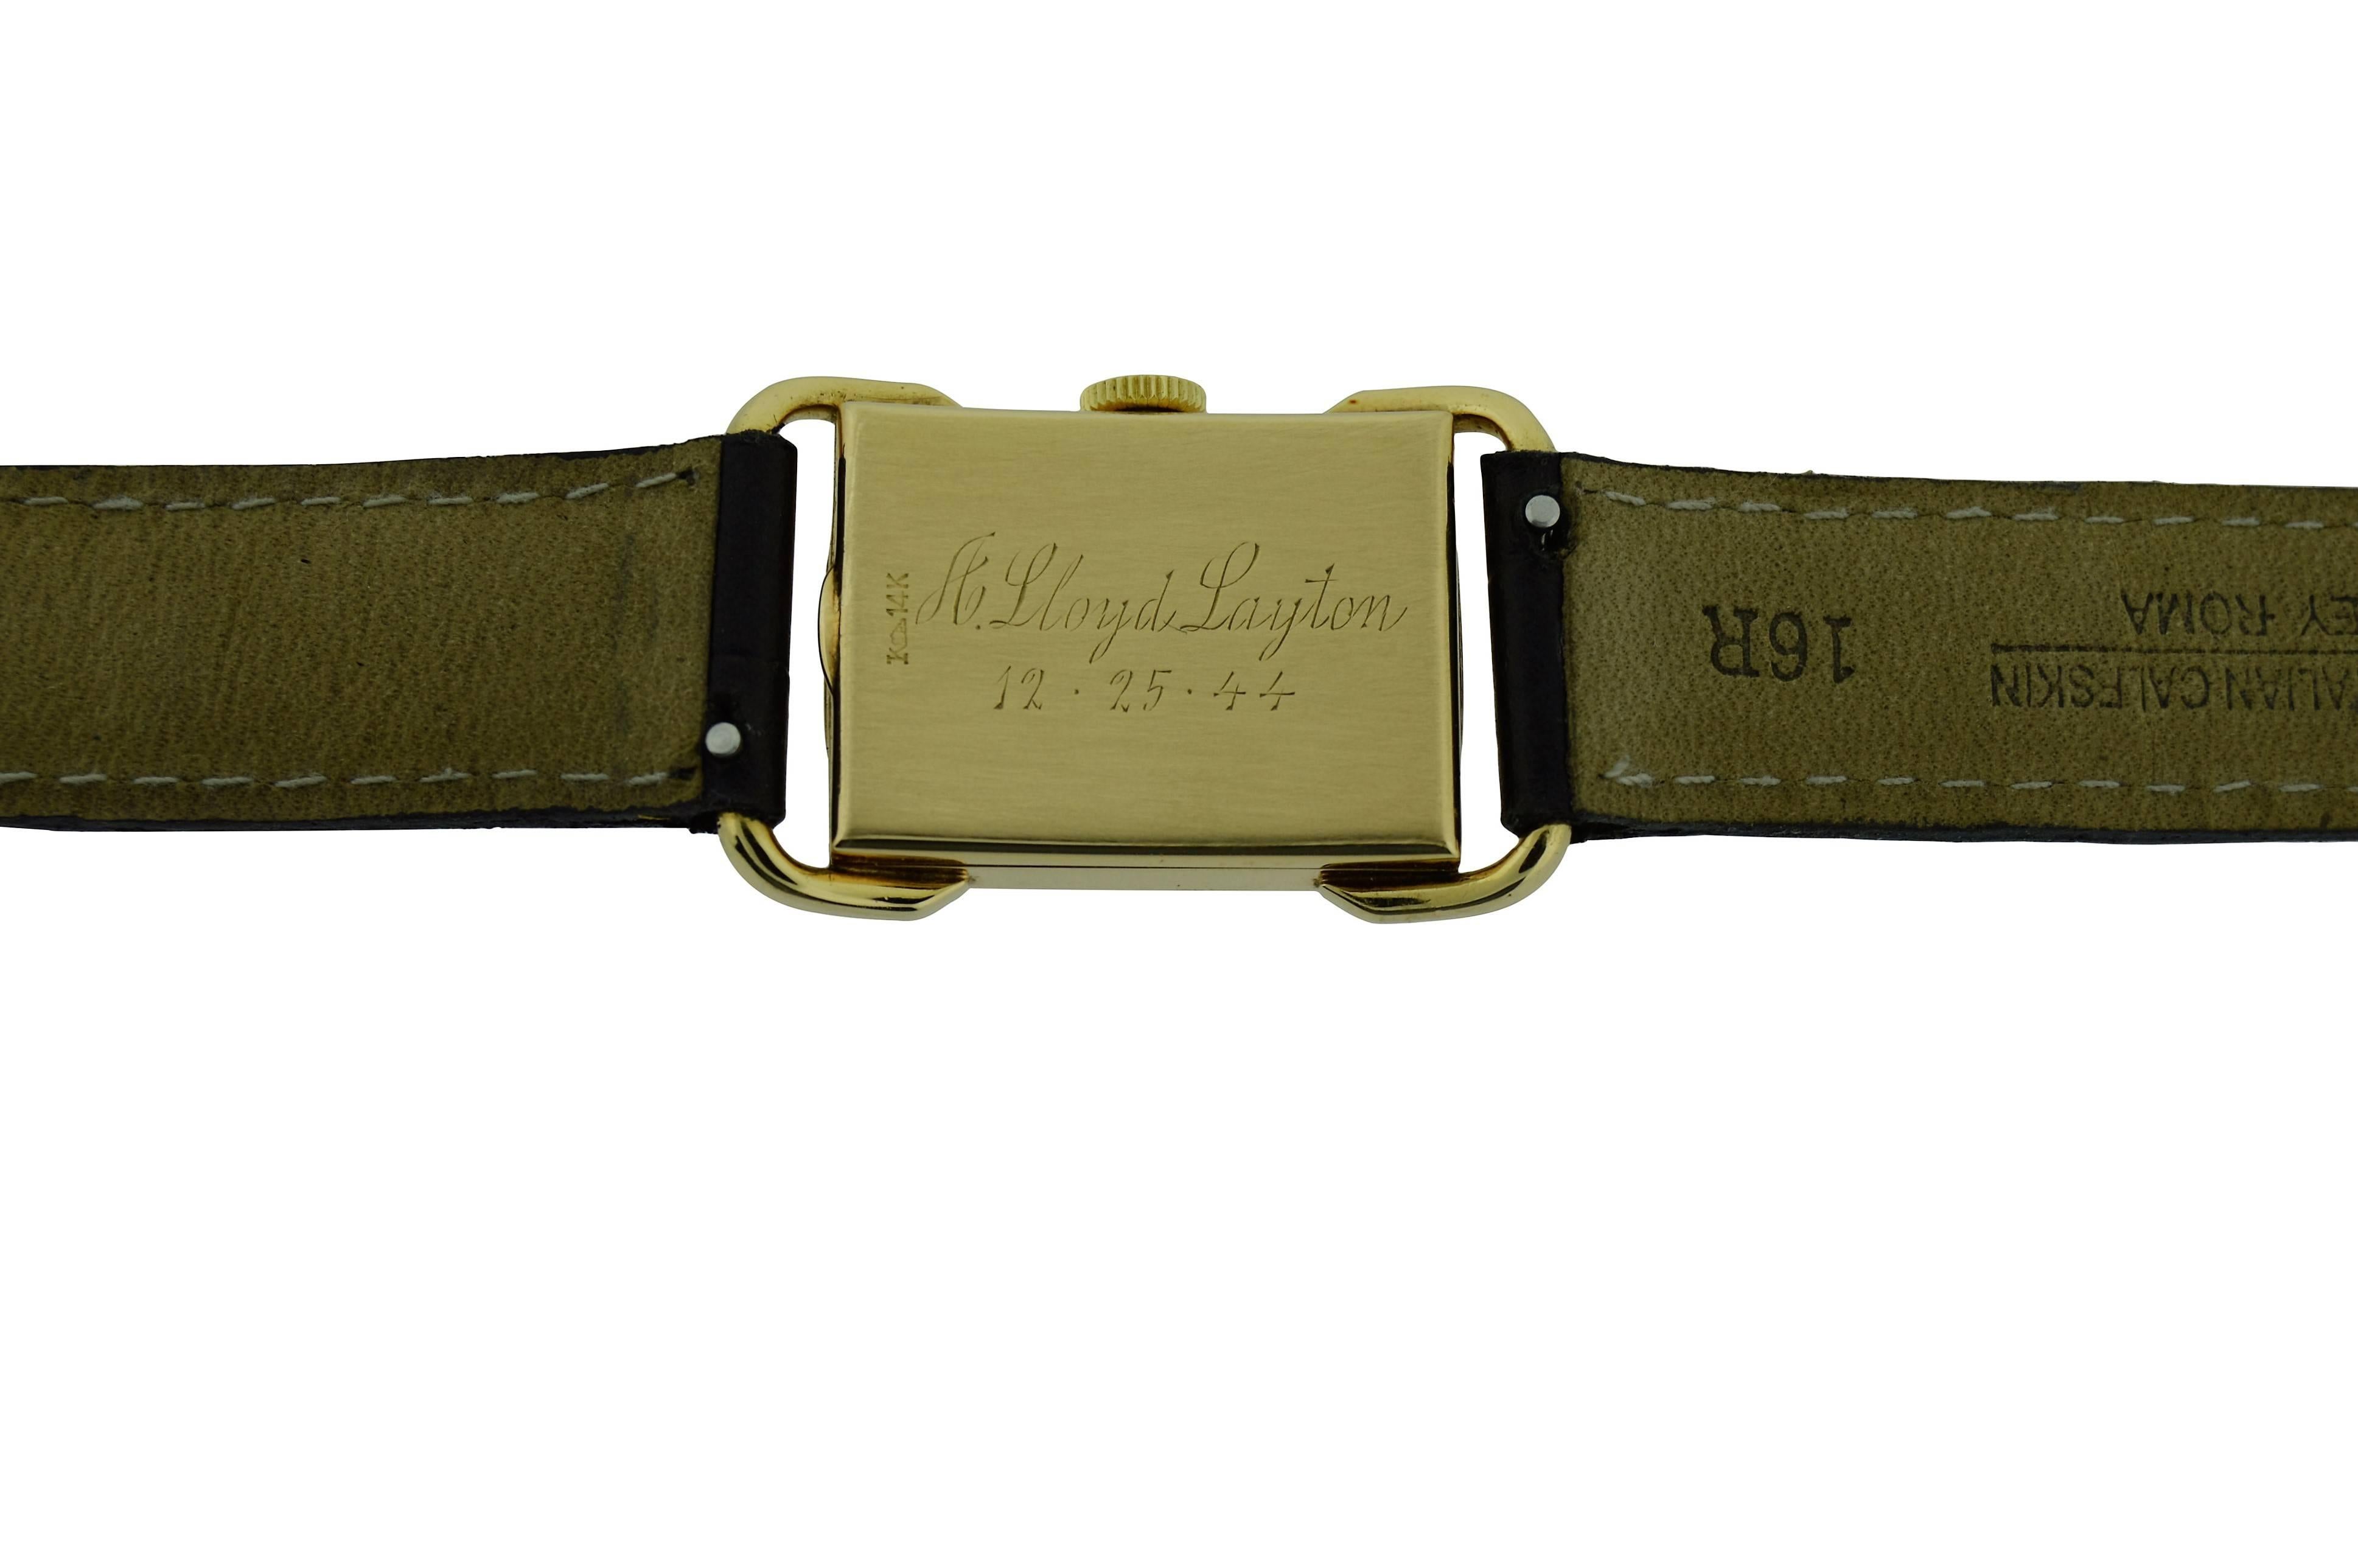 Art Deco 1940s Le Coultre Gold Men's Wrist Watch